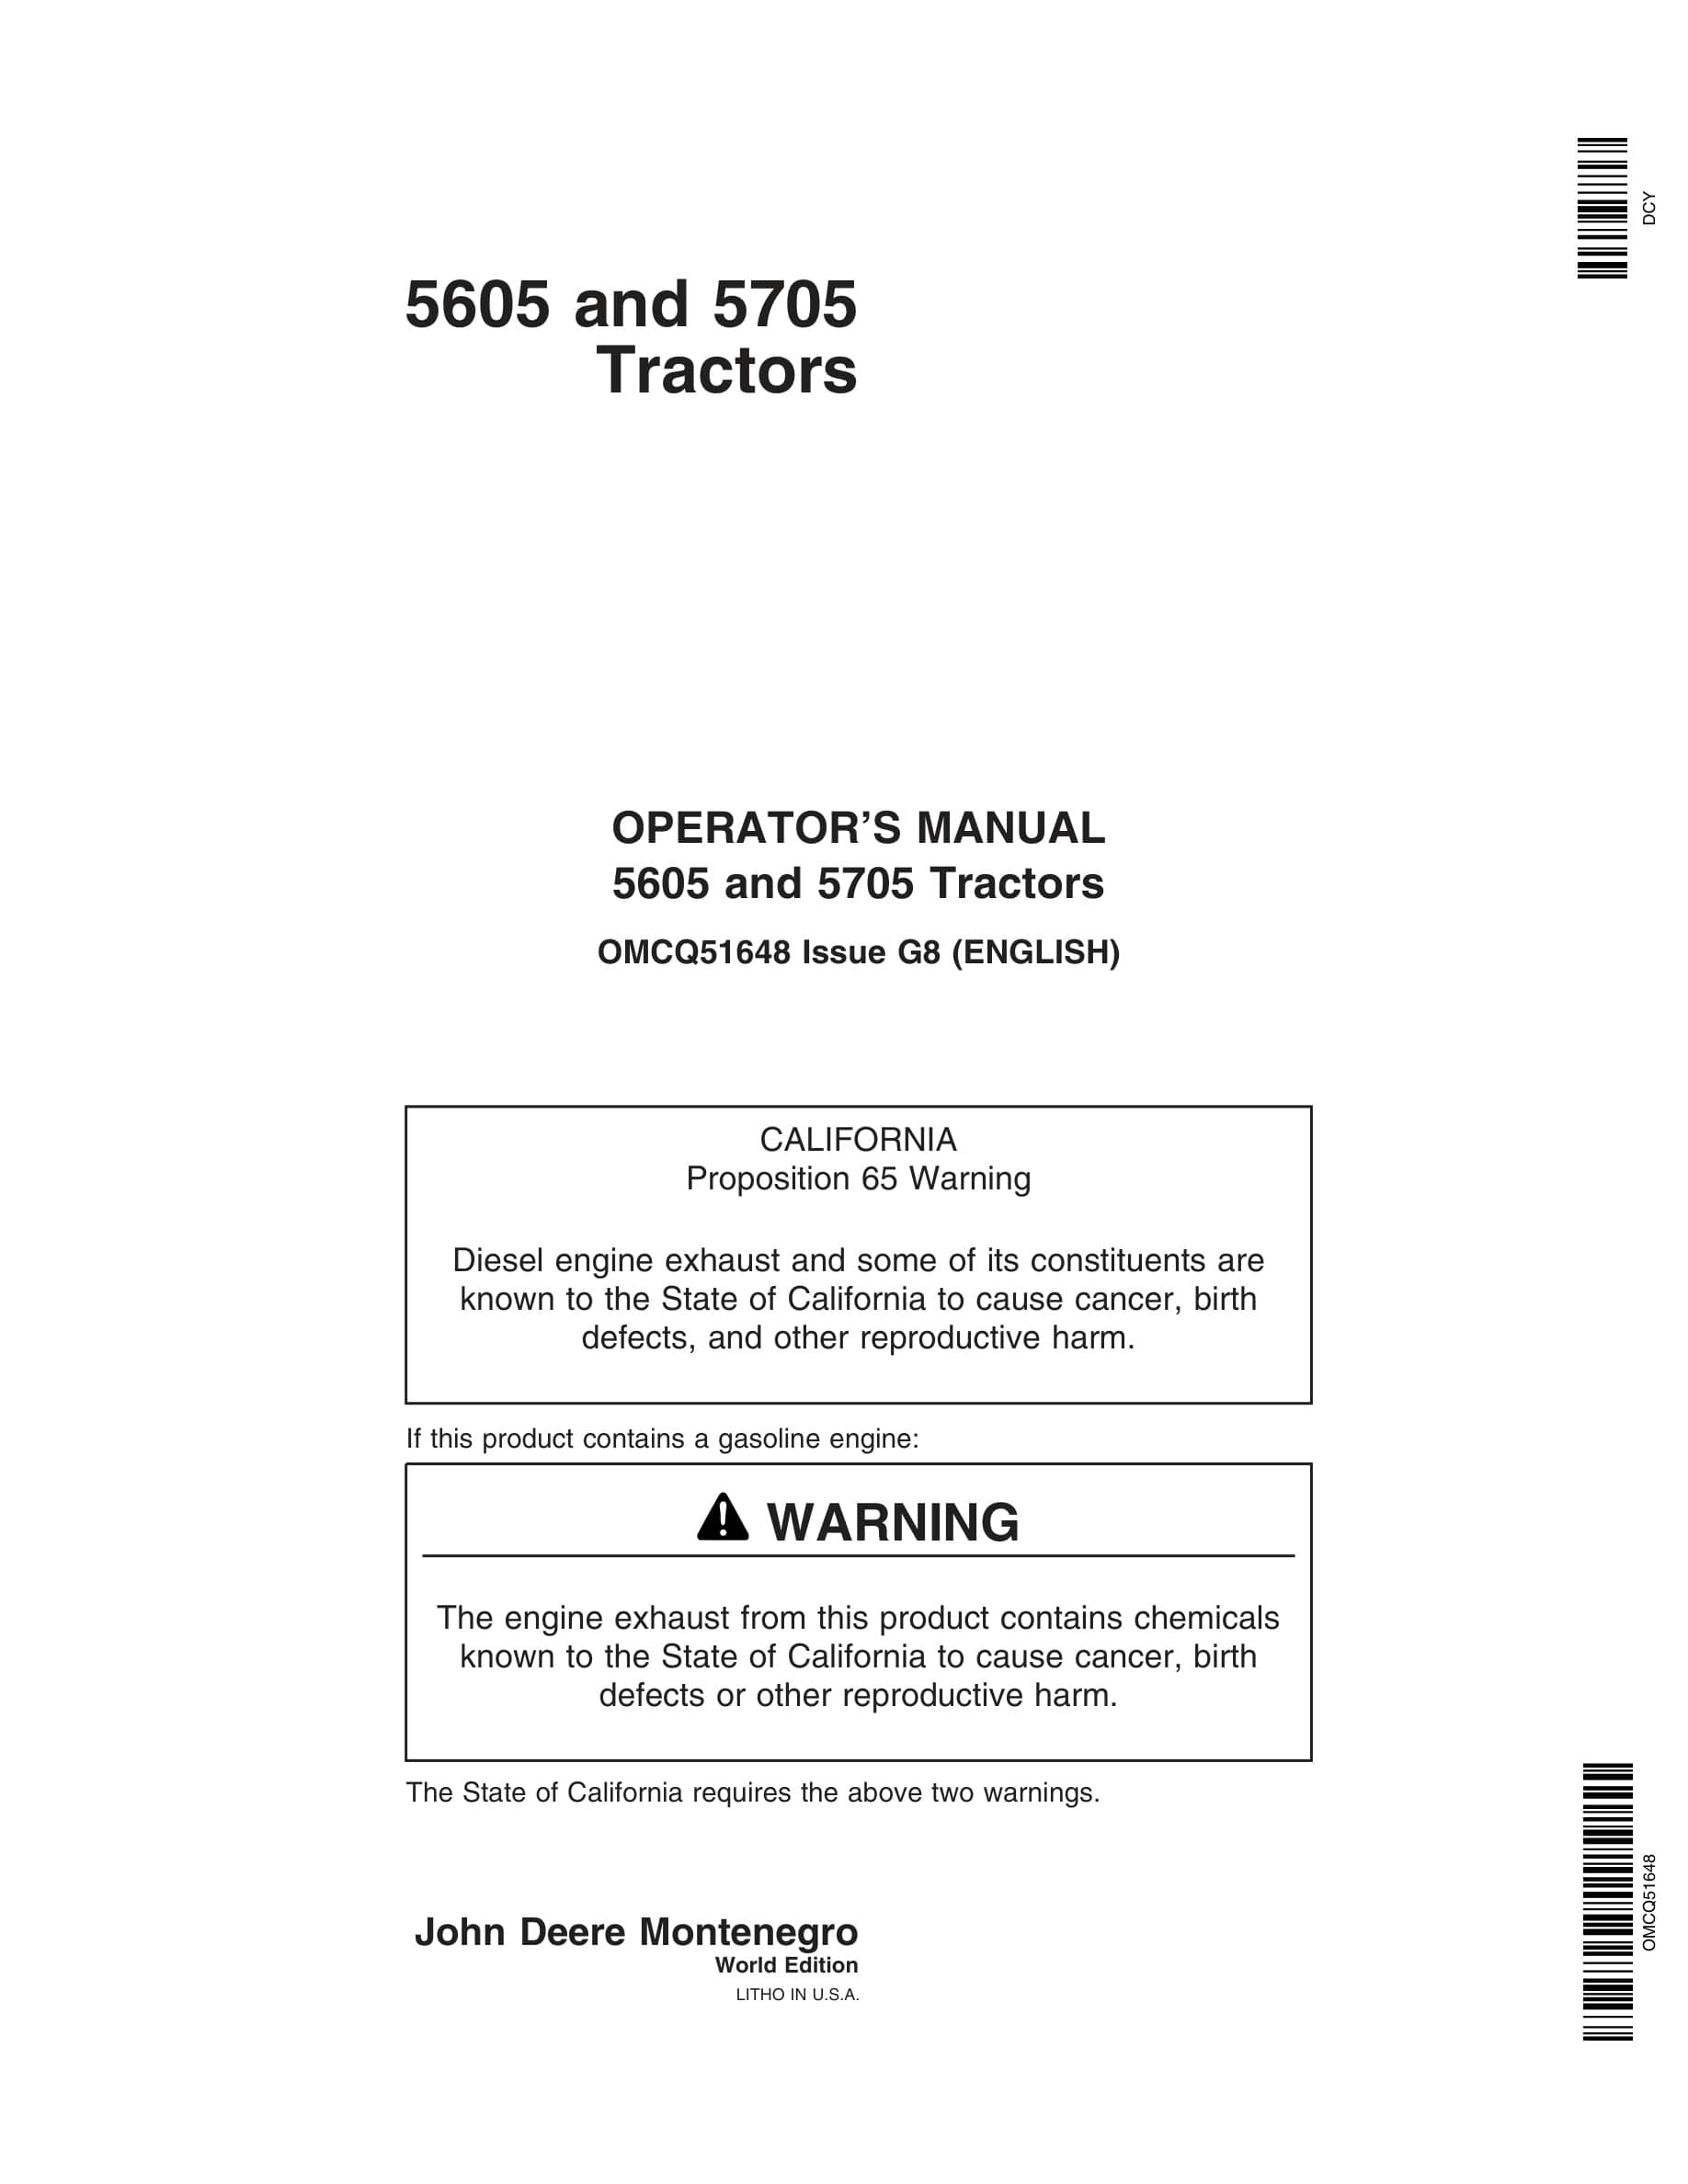 John Deere 5605 And 5705 Tractors Operator Manuals OMCQ51648-1